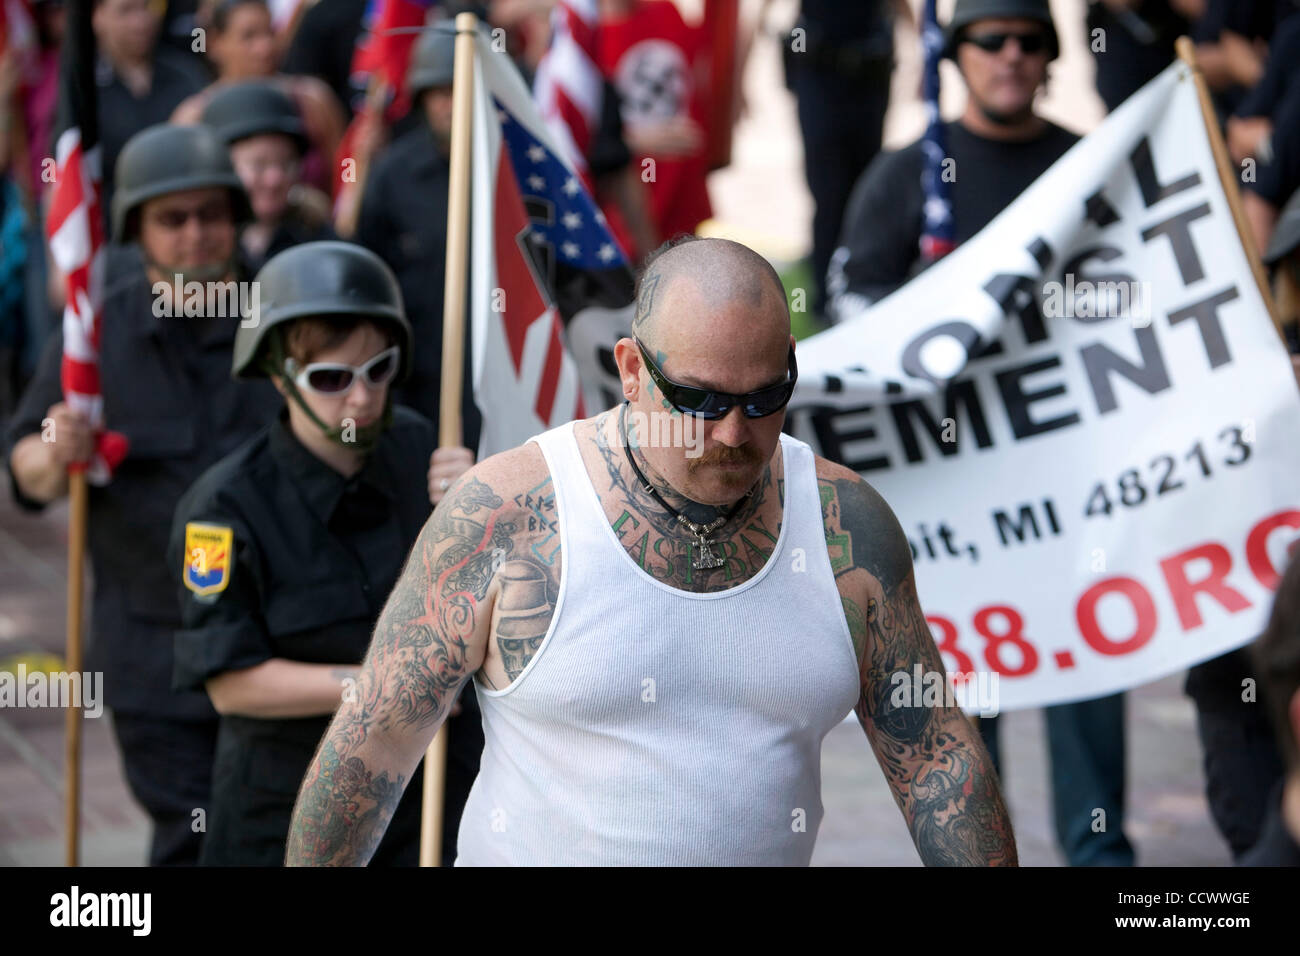 Dietro alle pesanti la protezione della polizia, i membri di un neo gruppo nazista ha parlato fuori contro non bianchi e gli omosessuali. Foto Stock